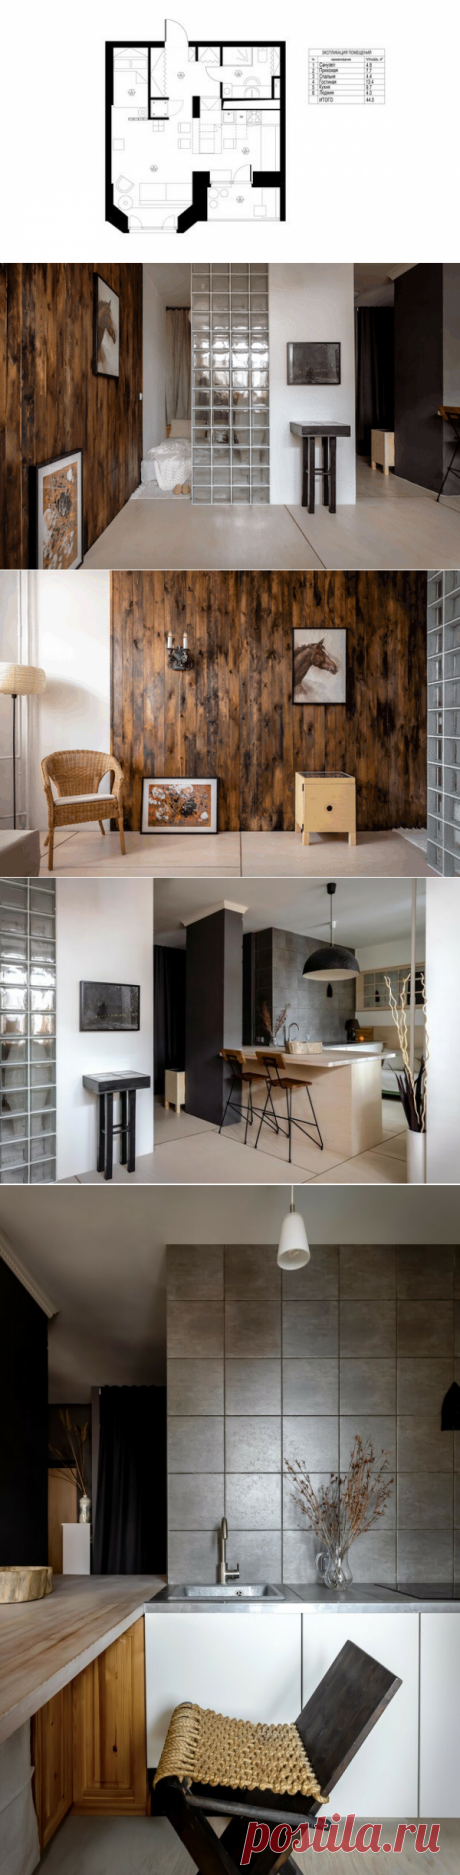 Маленькая квартира-студия в стиле эколофт: уютный интерьер для мамы | ELLE Decoration | Яндекс Дзен